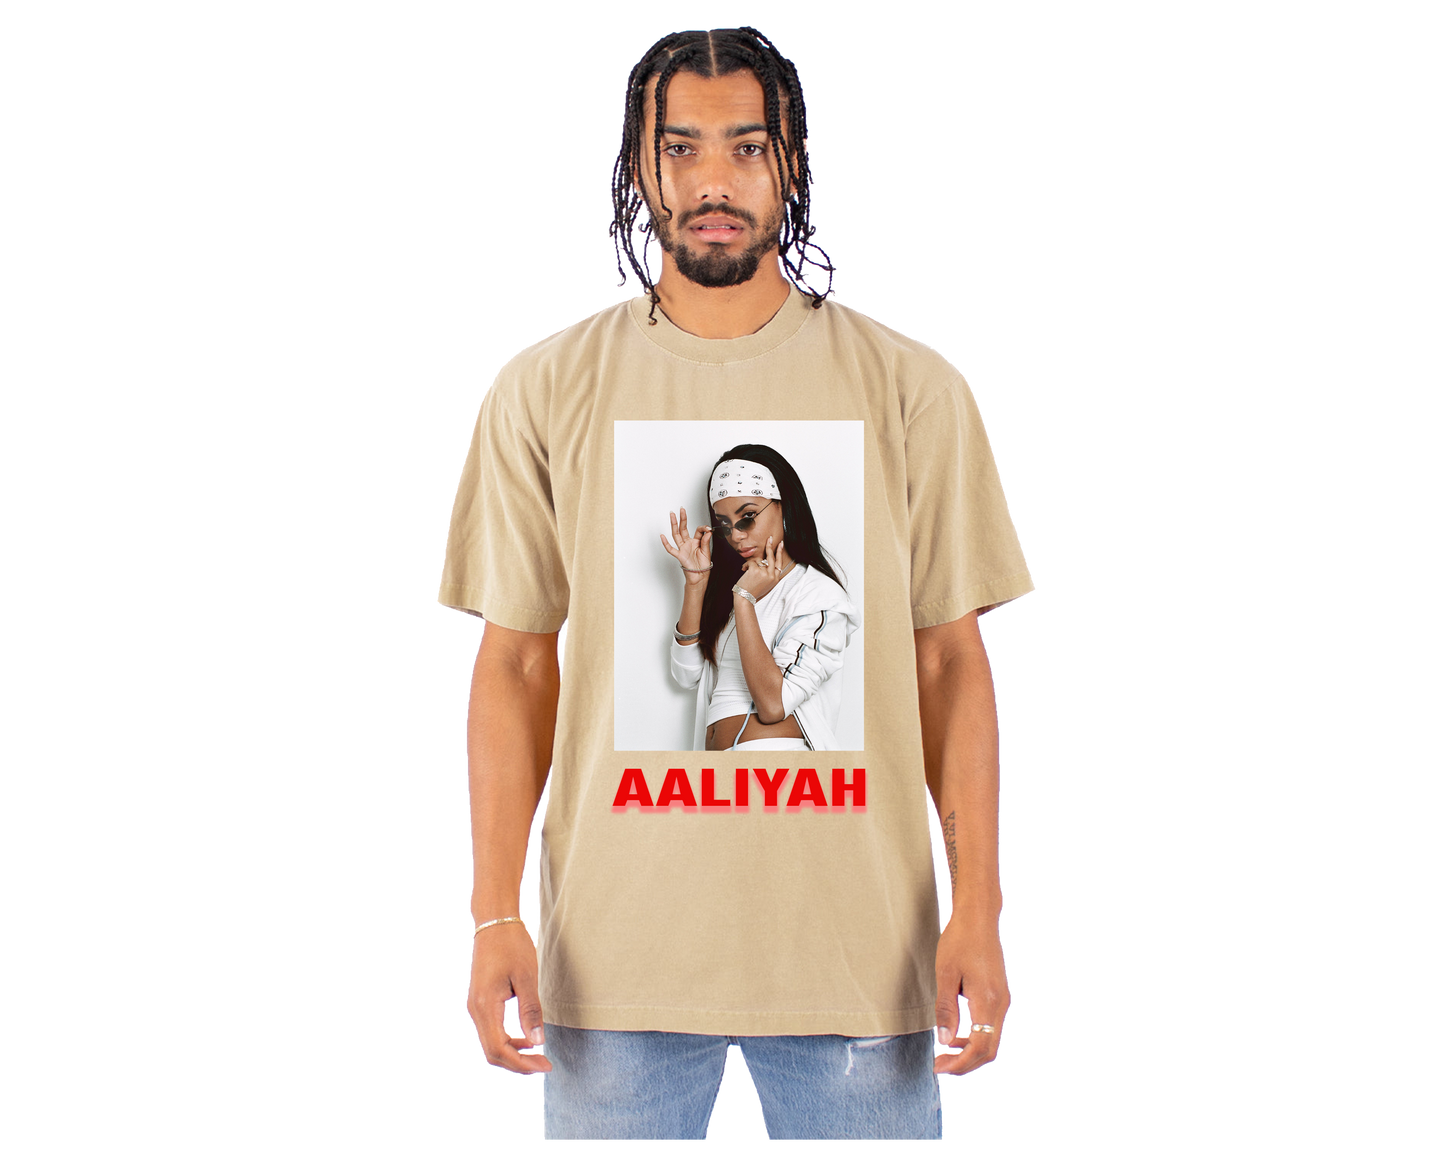 AALIYAH